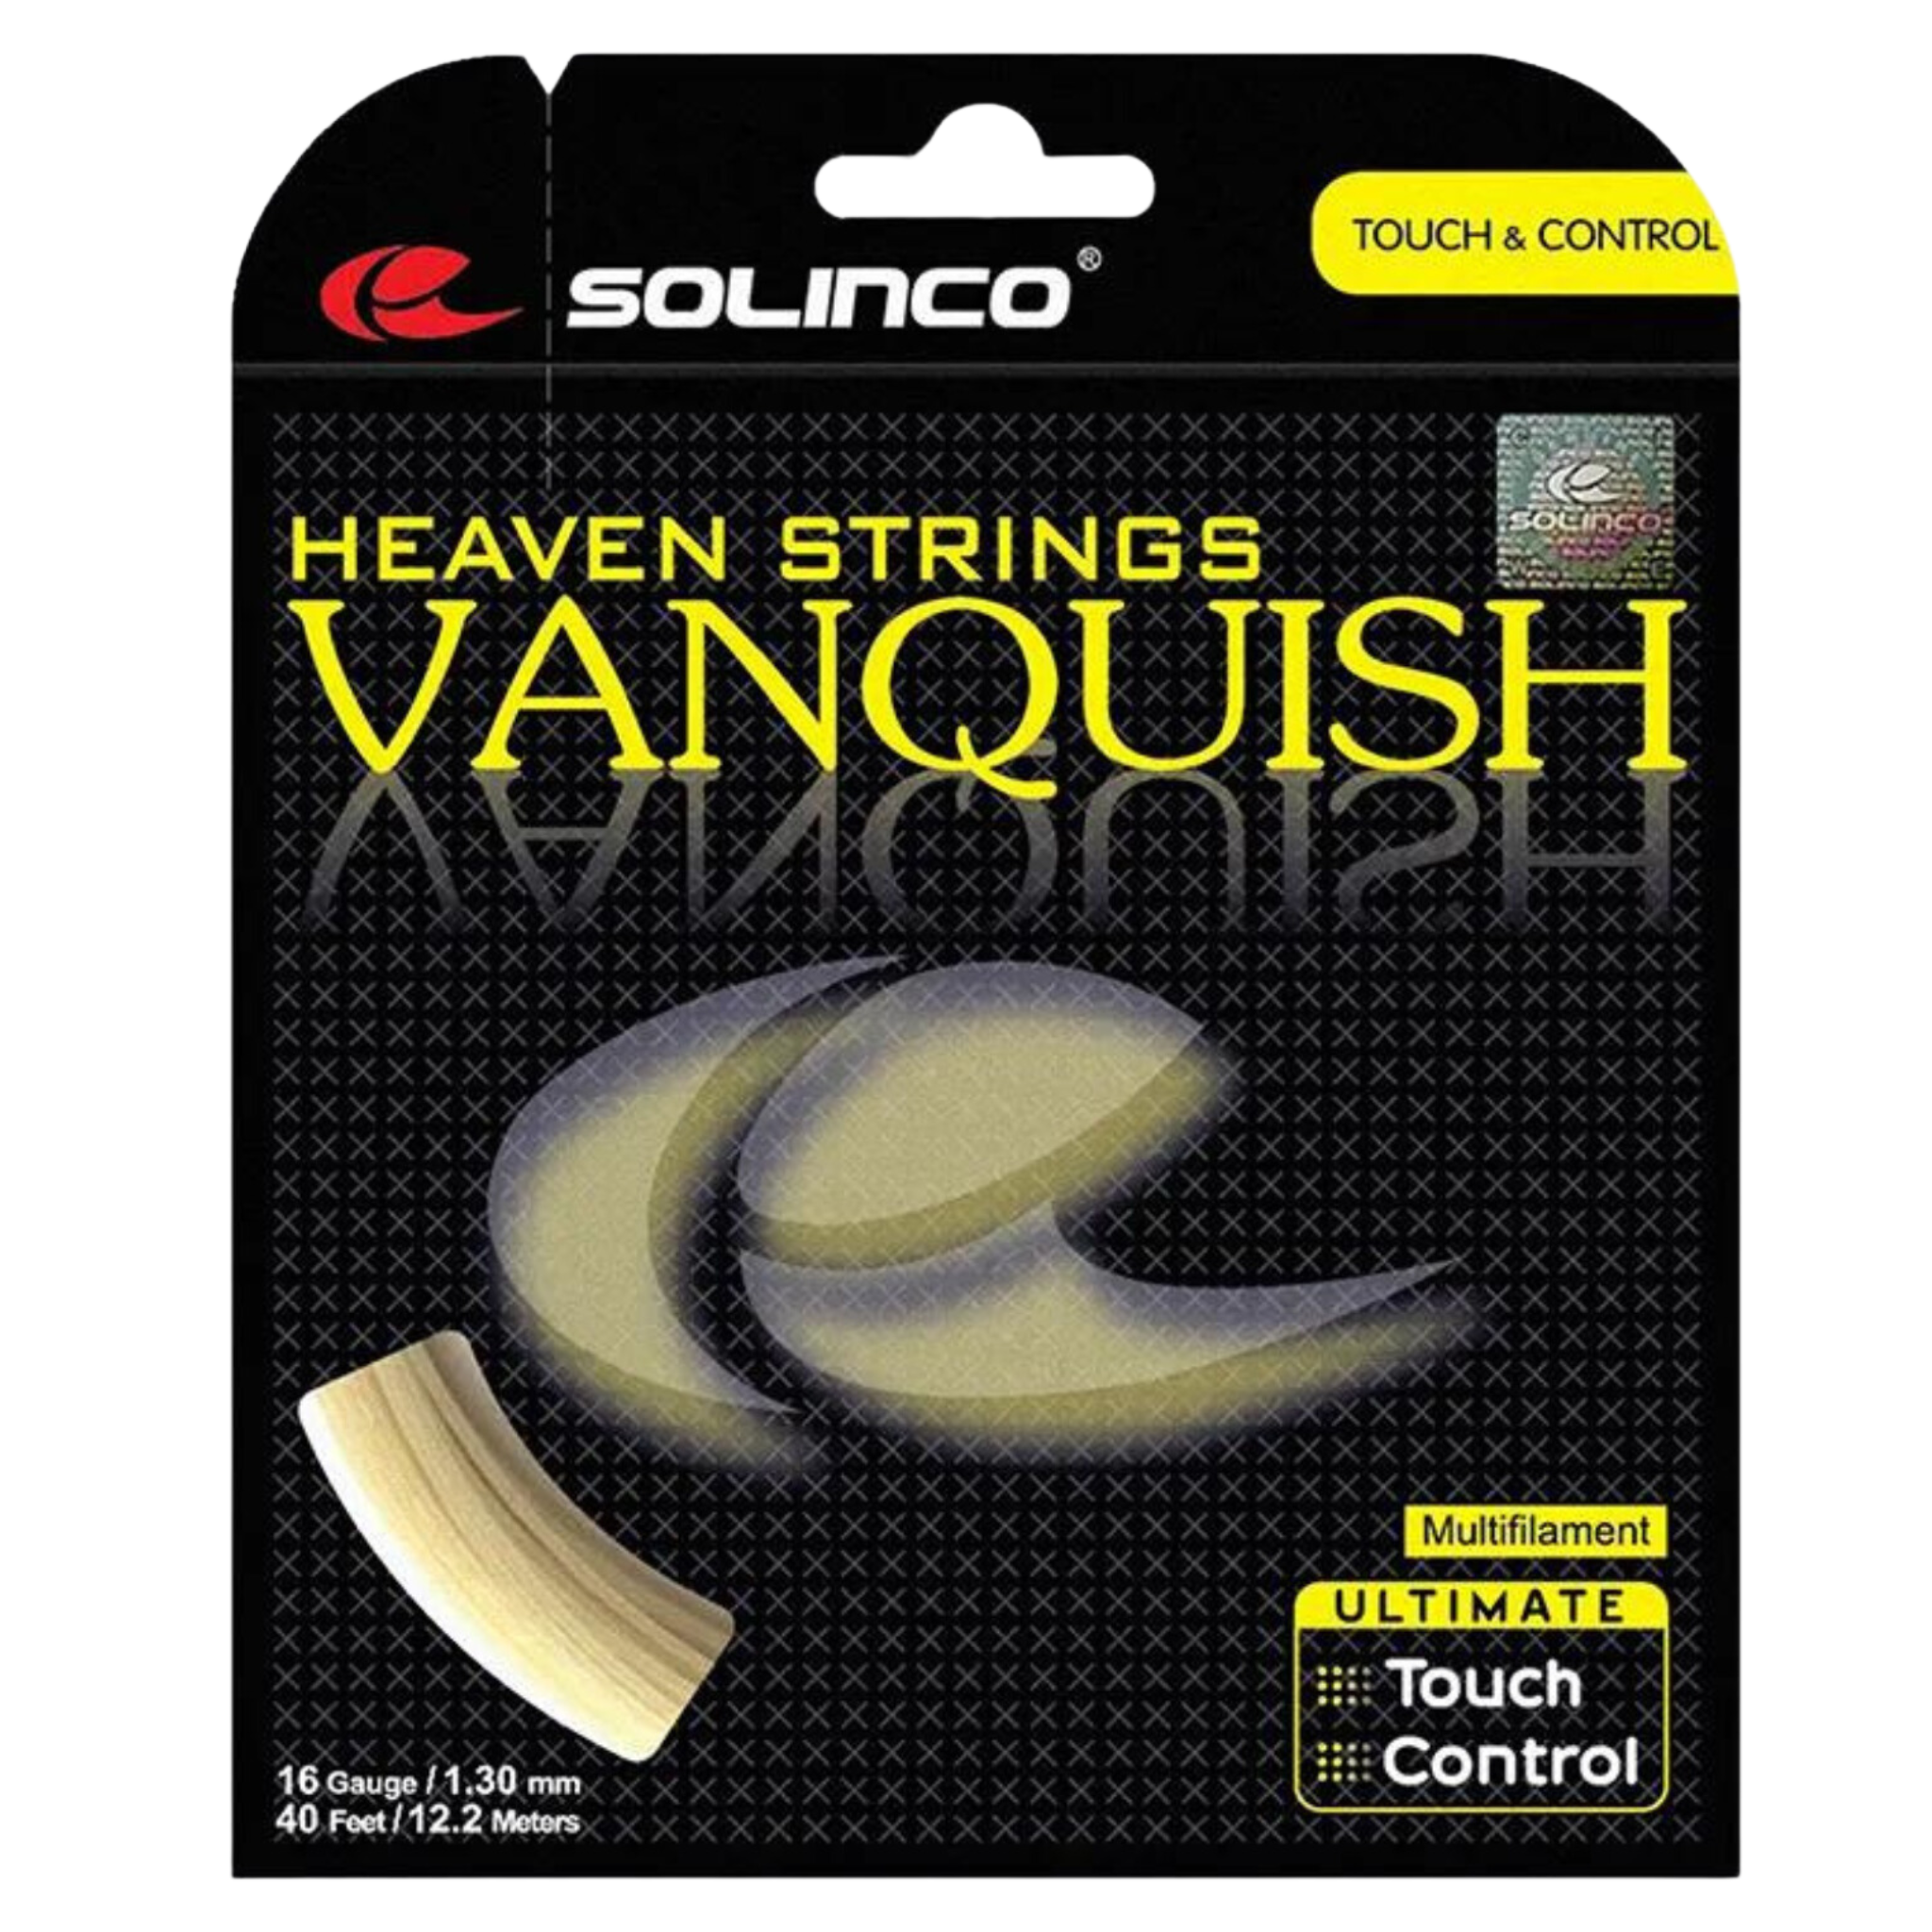 Solinco Vanquish 16G 12m set